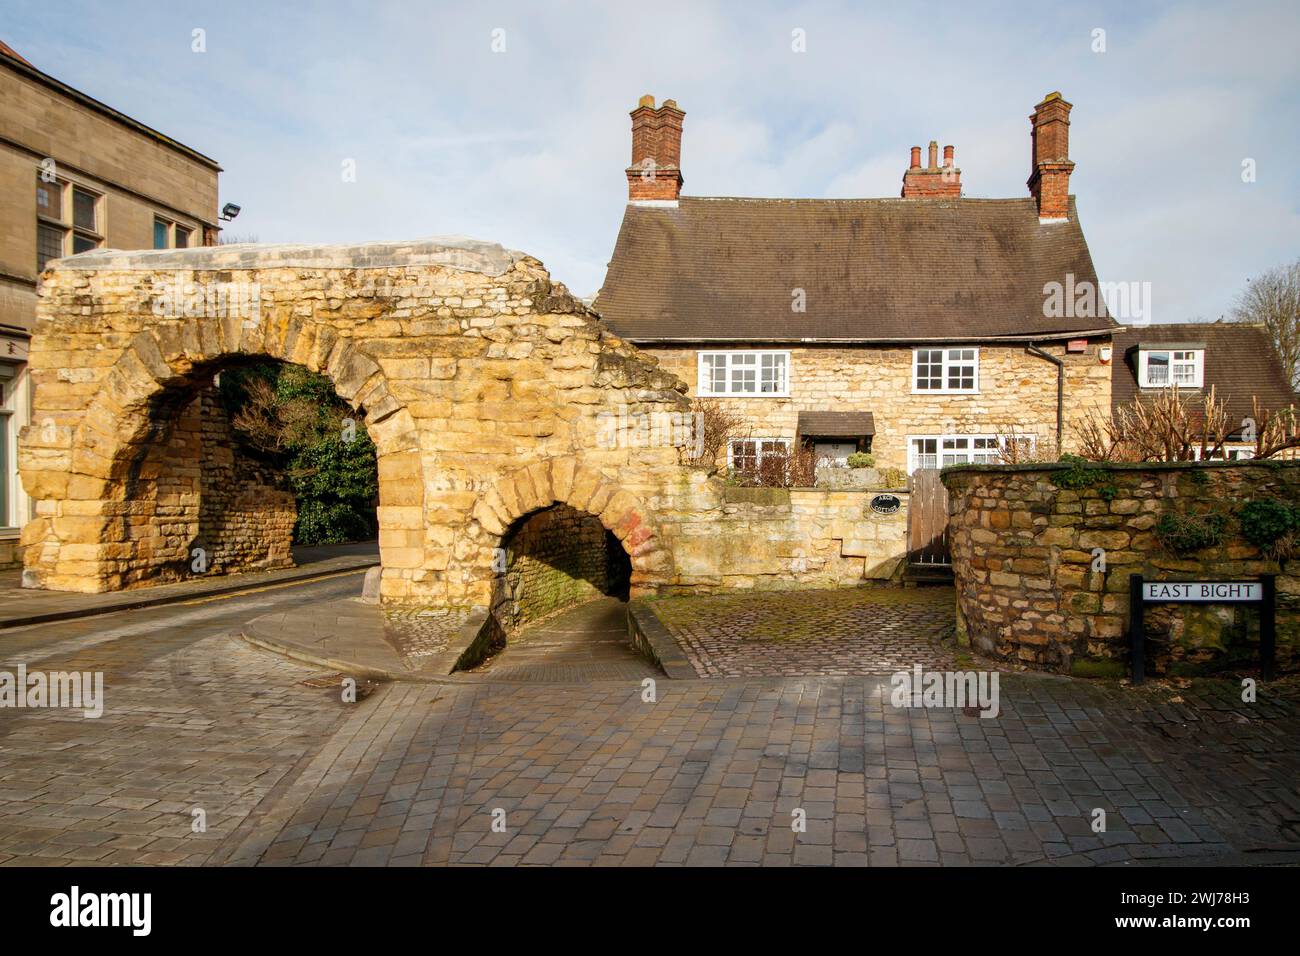 Der Newport Arch und die Straße nach Bailgate im oberen Bereich von Lincoln. Newport Arch ist ein römisches Tor aus dem 3. Jahrhundert in Lincoln, Lincolnshire. Es handelt sich um ein Scheduled Monument und ein denkmalgeschütztes Gebäude, das angeblich der älteste Bogen im Vereinigten Königreich ist, der noch vom Verkehr genutzt wird. Stockfoto